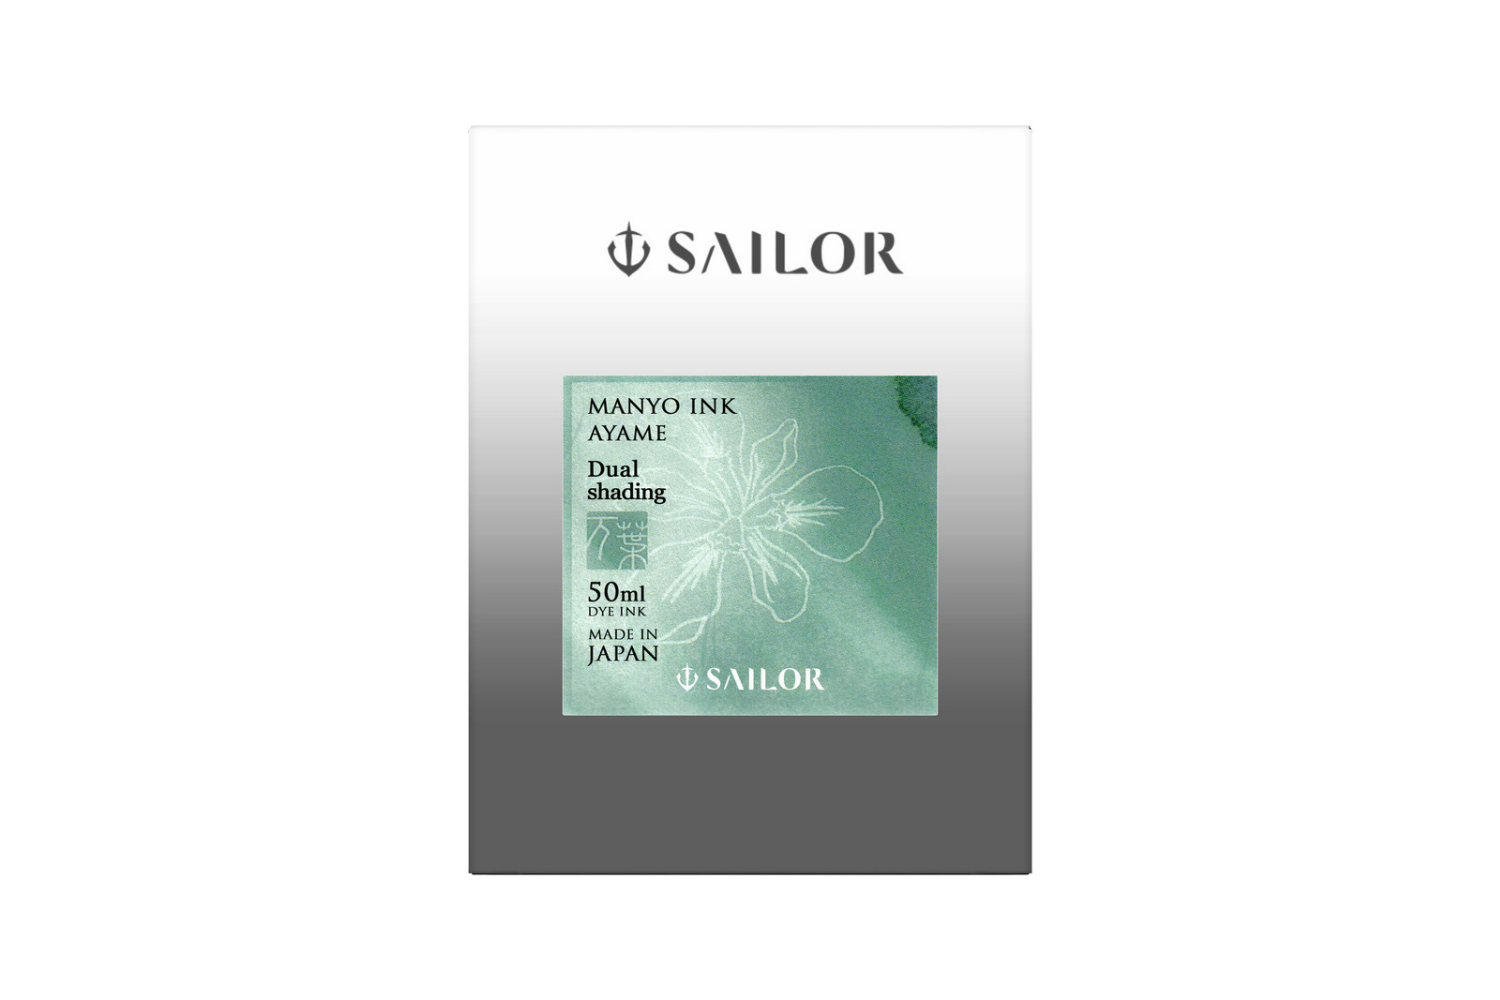 Sailor - Manyo Dual Shading Ayame Green Ink 50ml